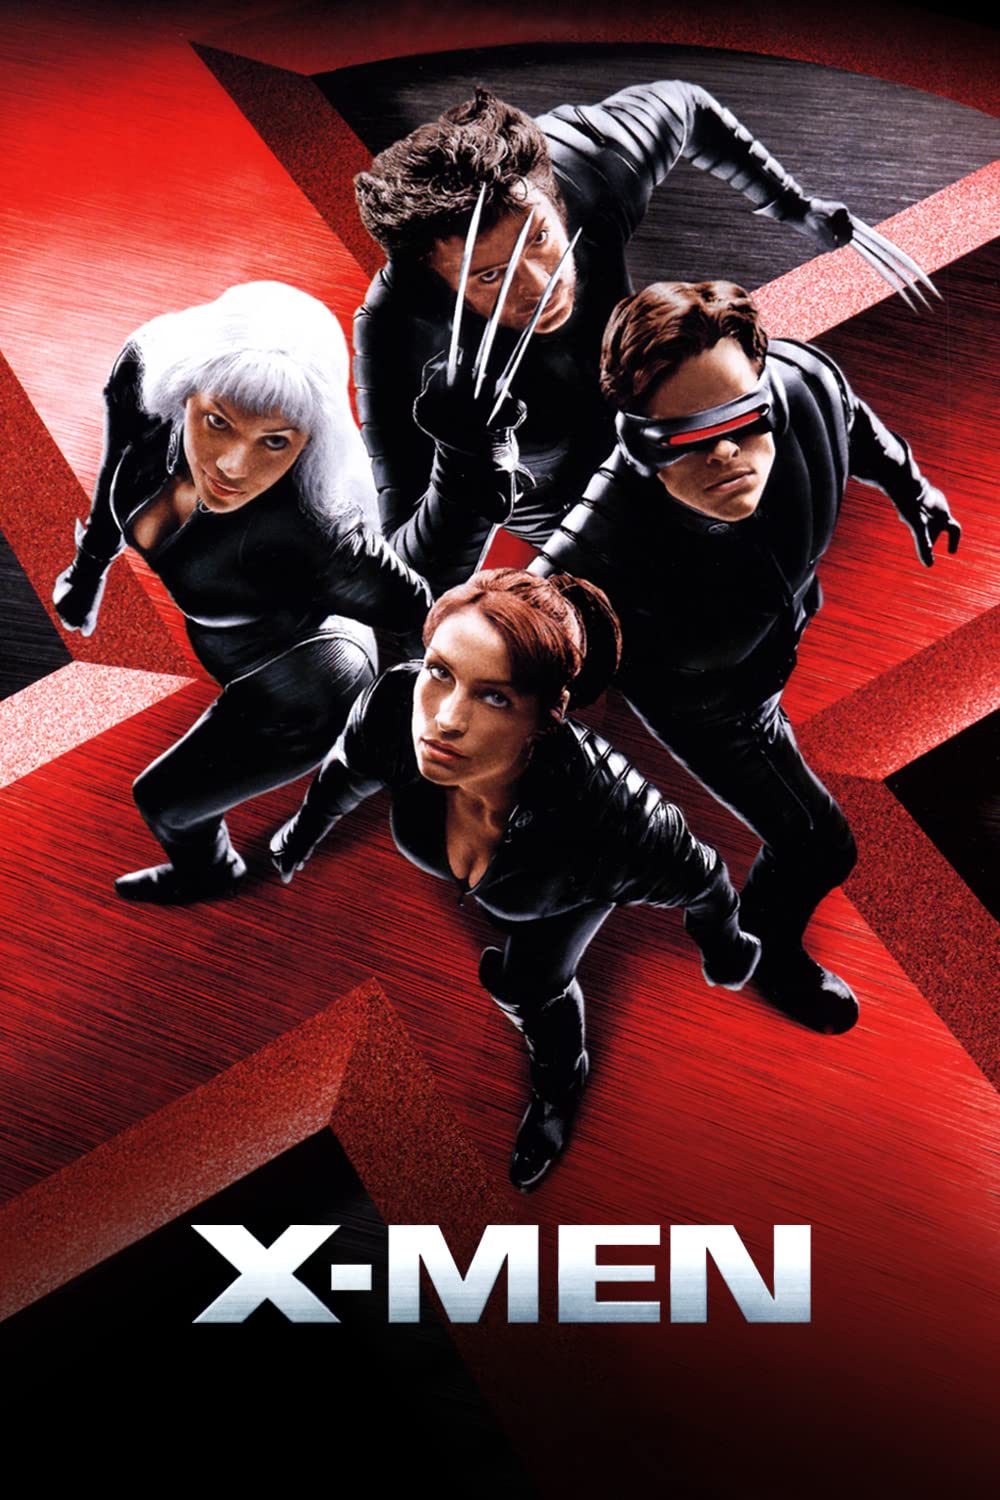 Famke Janssen, Halle Berry, James Marsden, and Hugh Jackman in X-Men (2000)